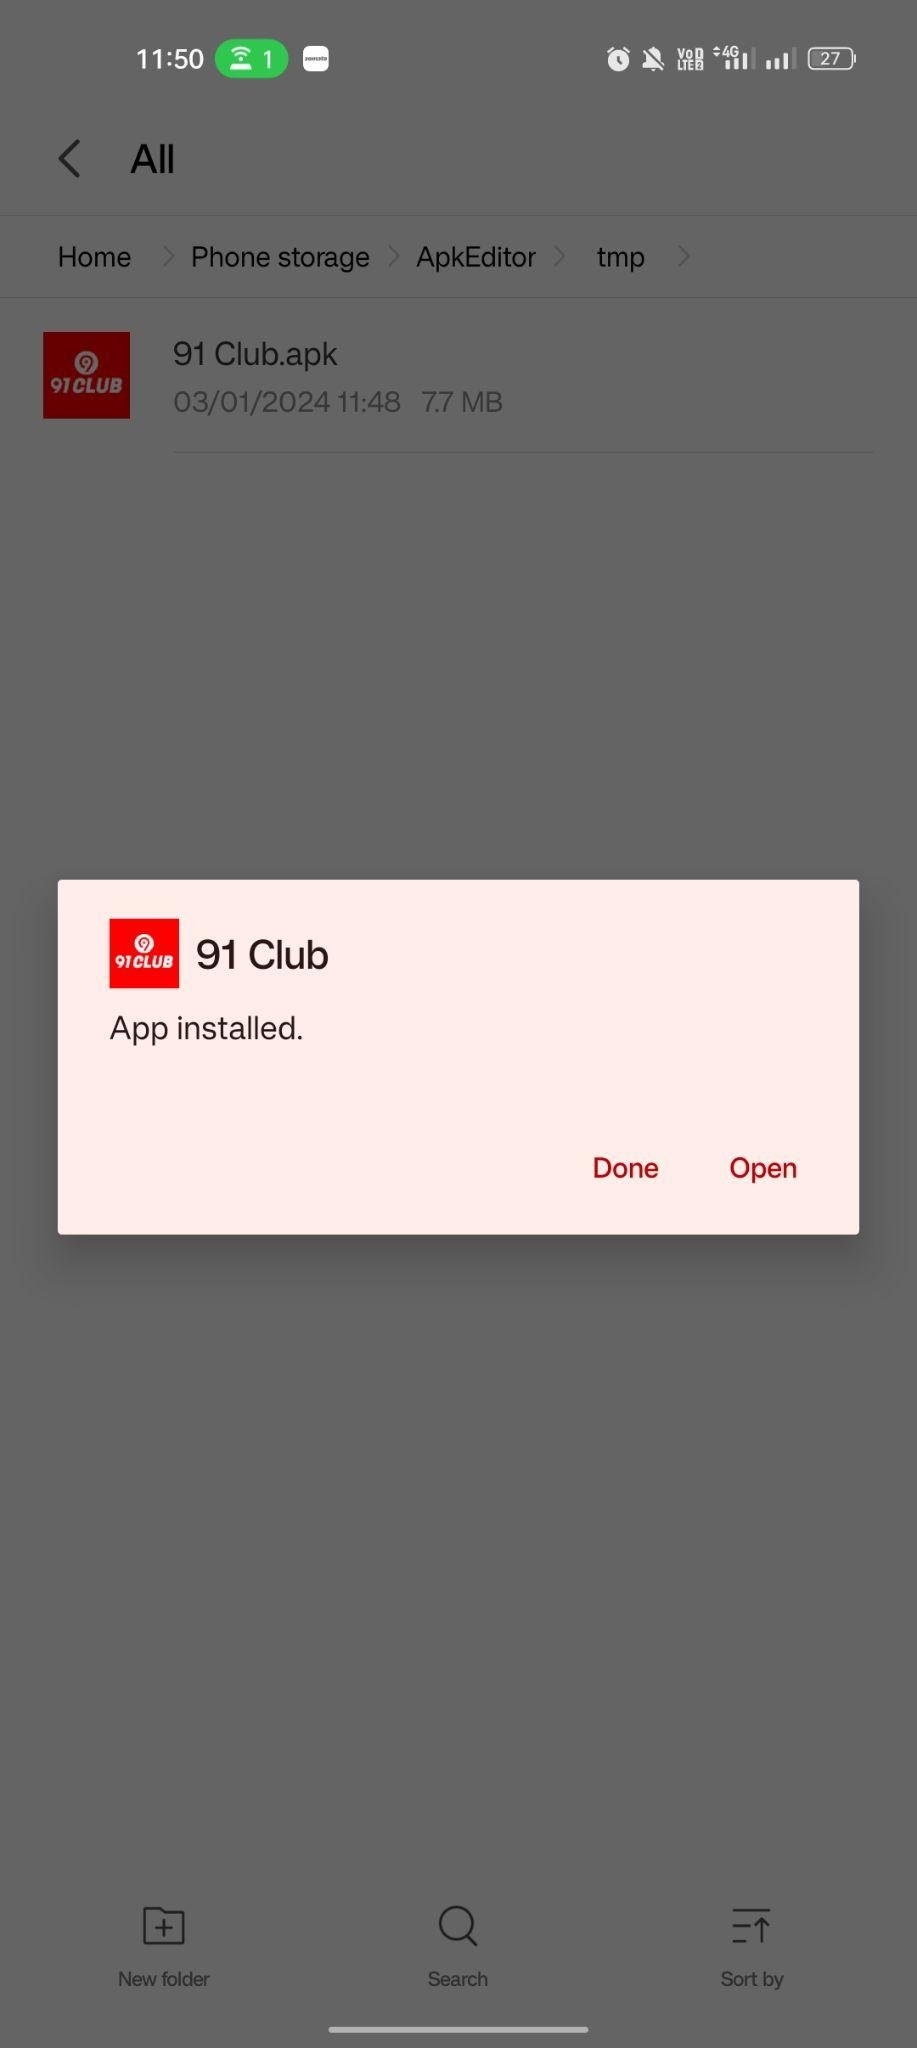 91 Club apk installed